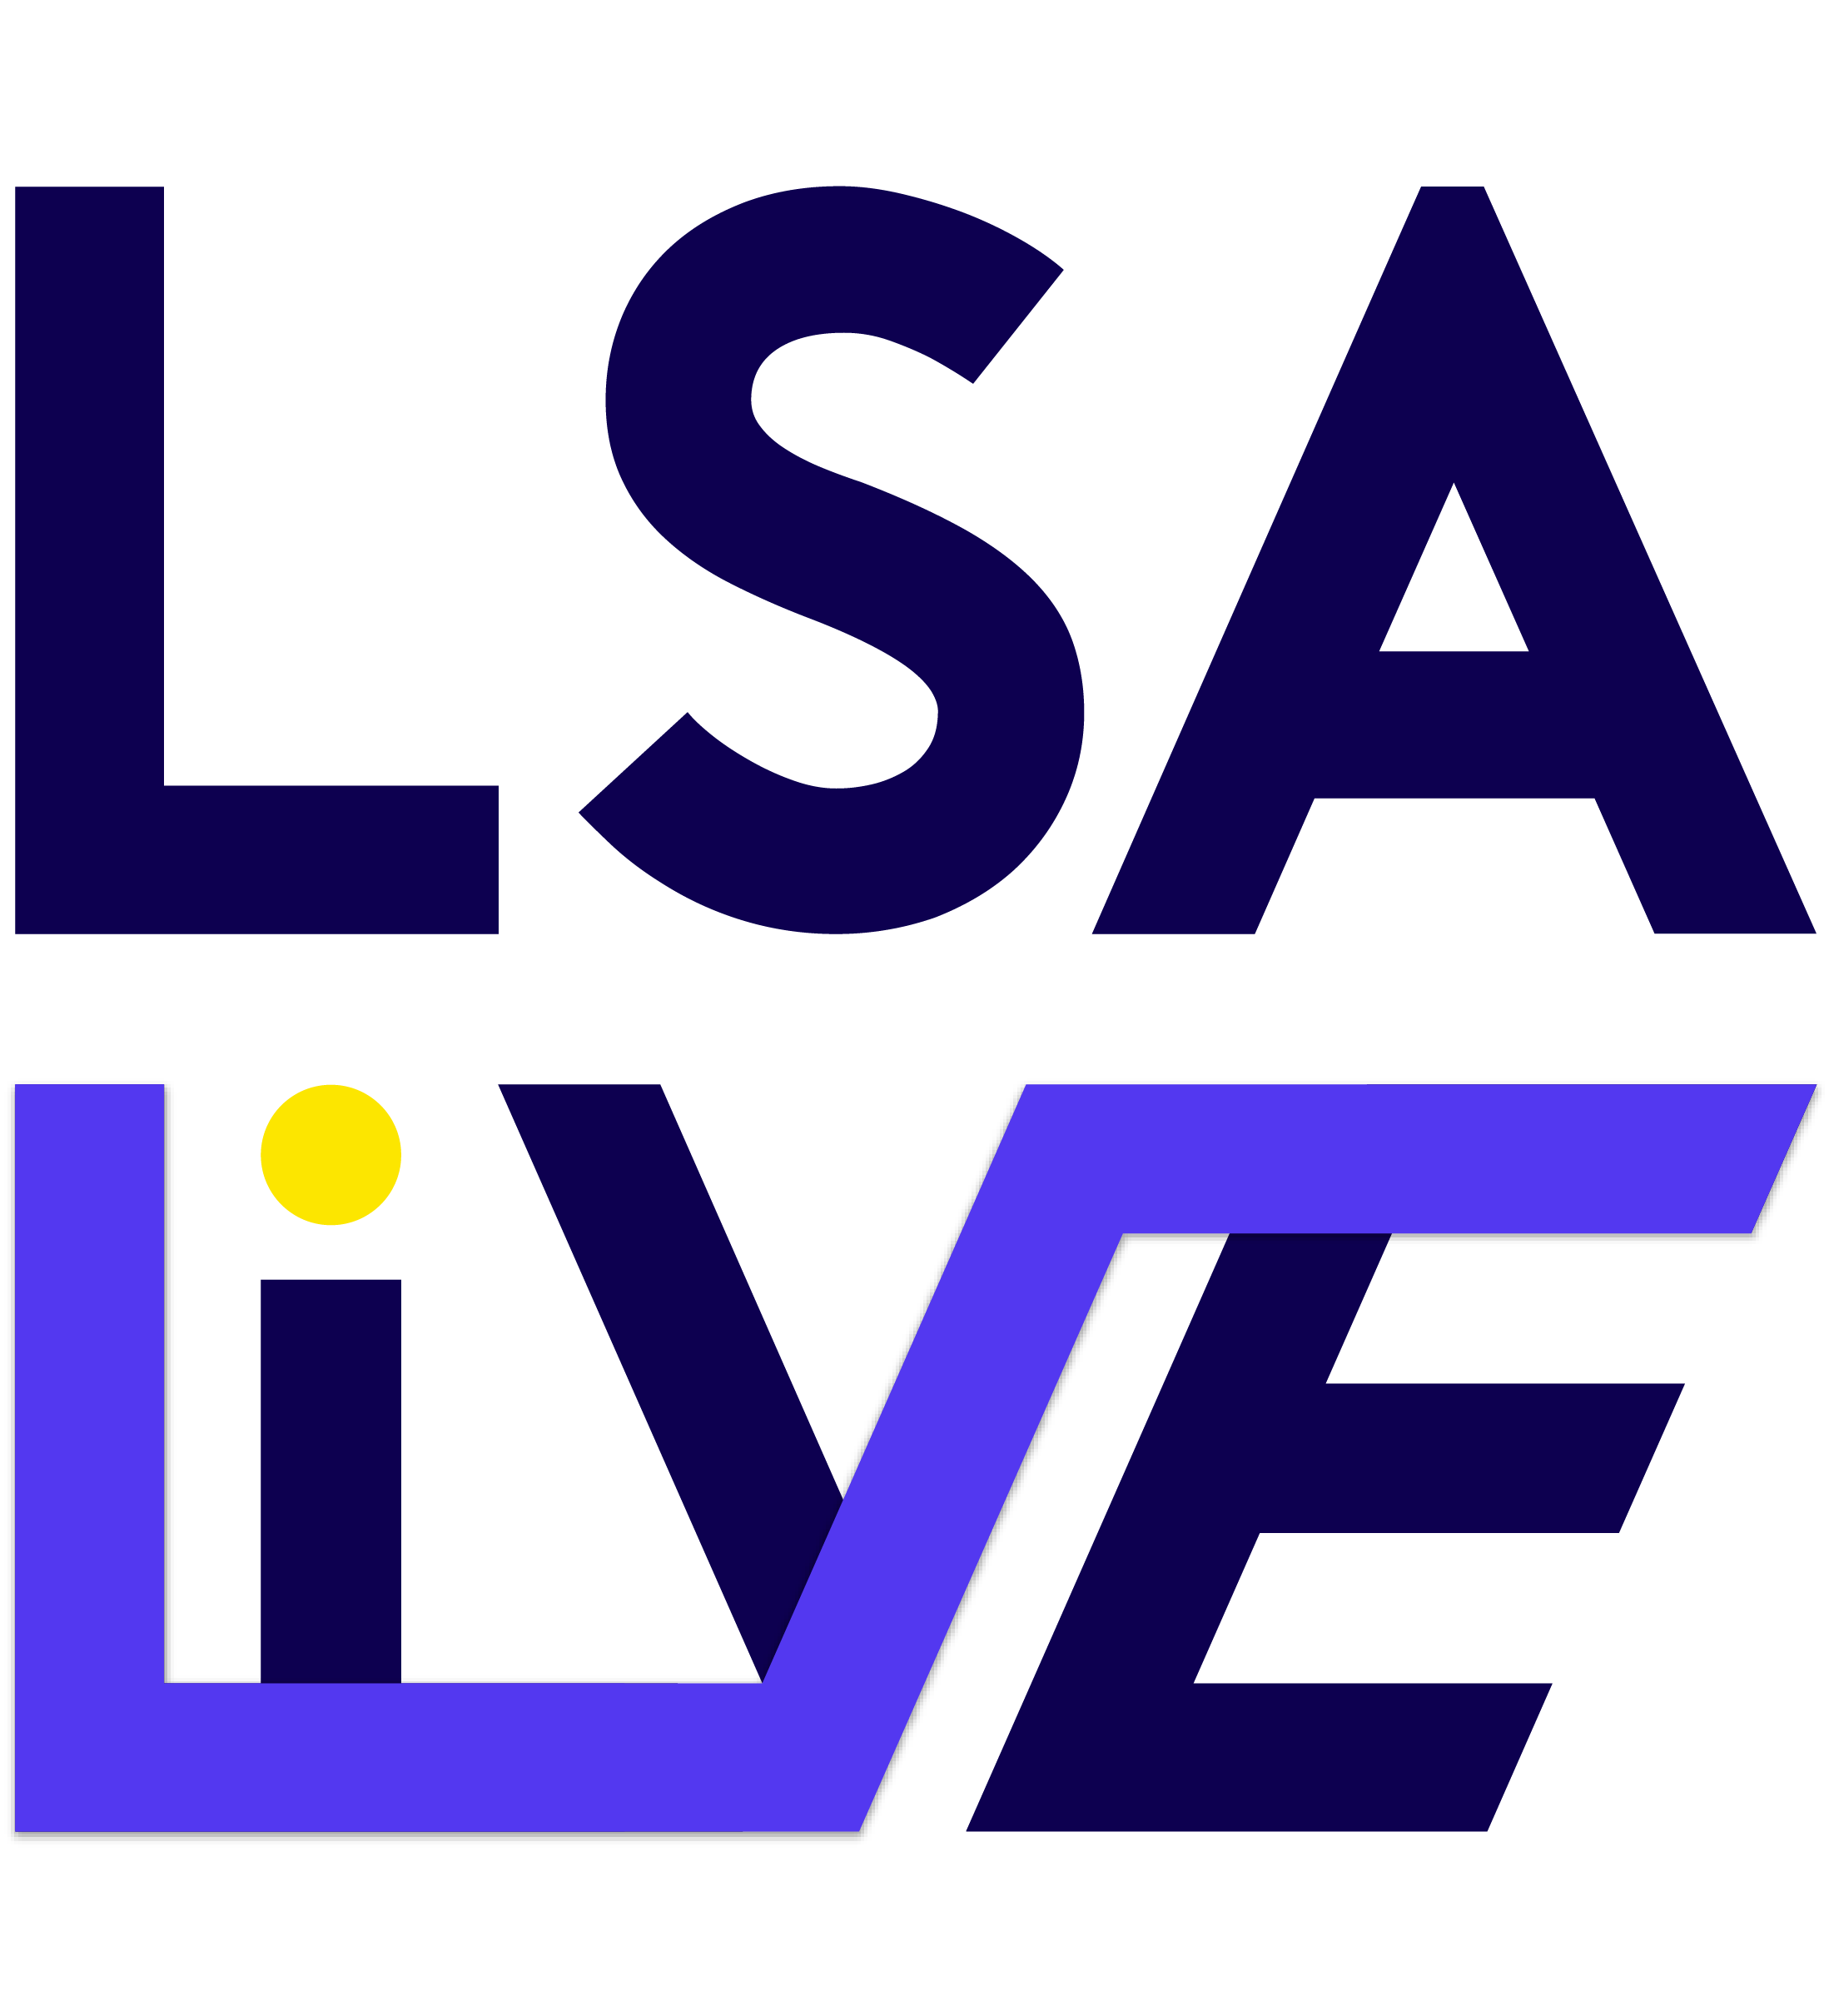 LSA LIVE 2022